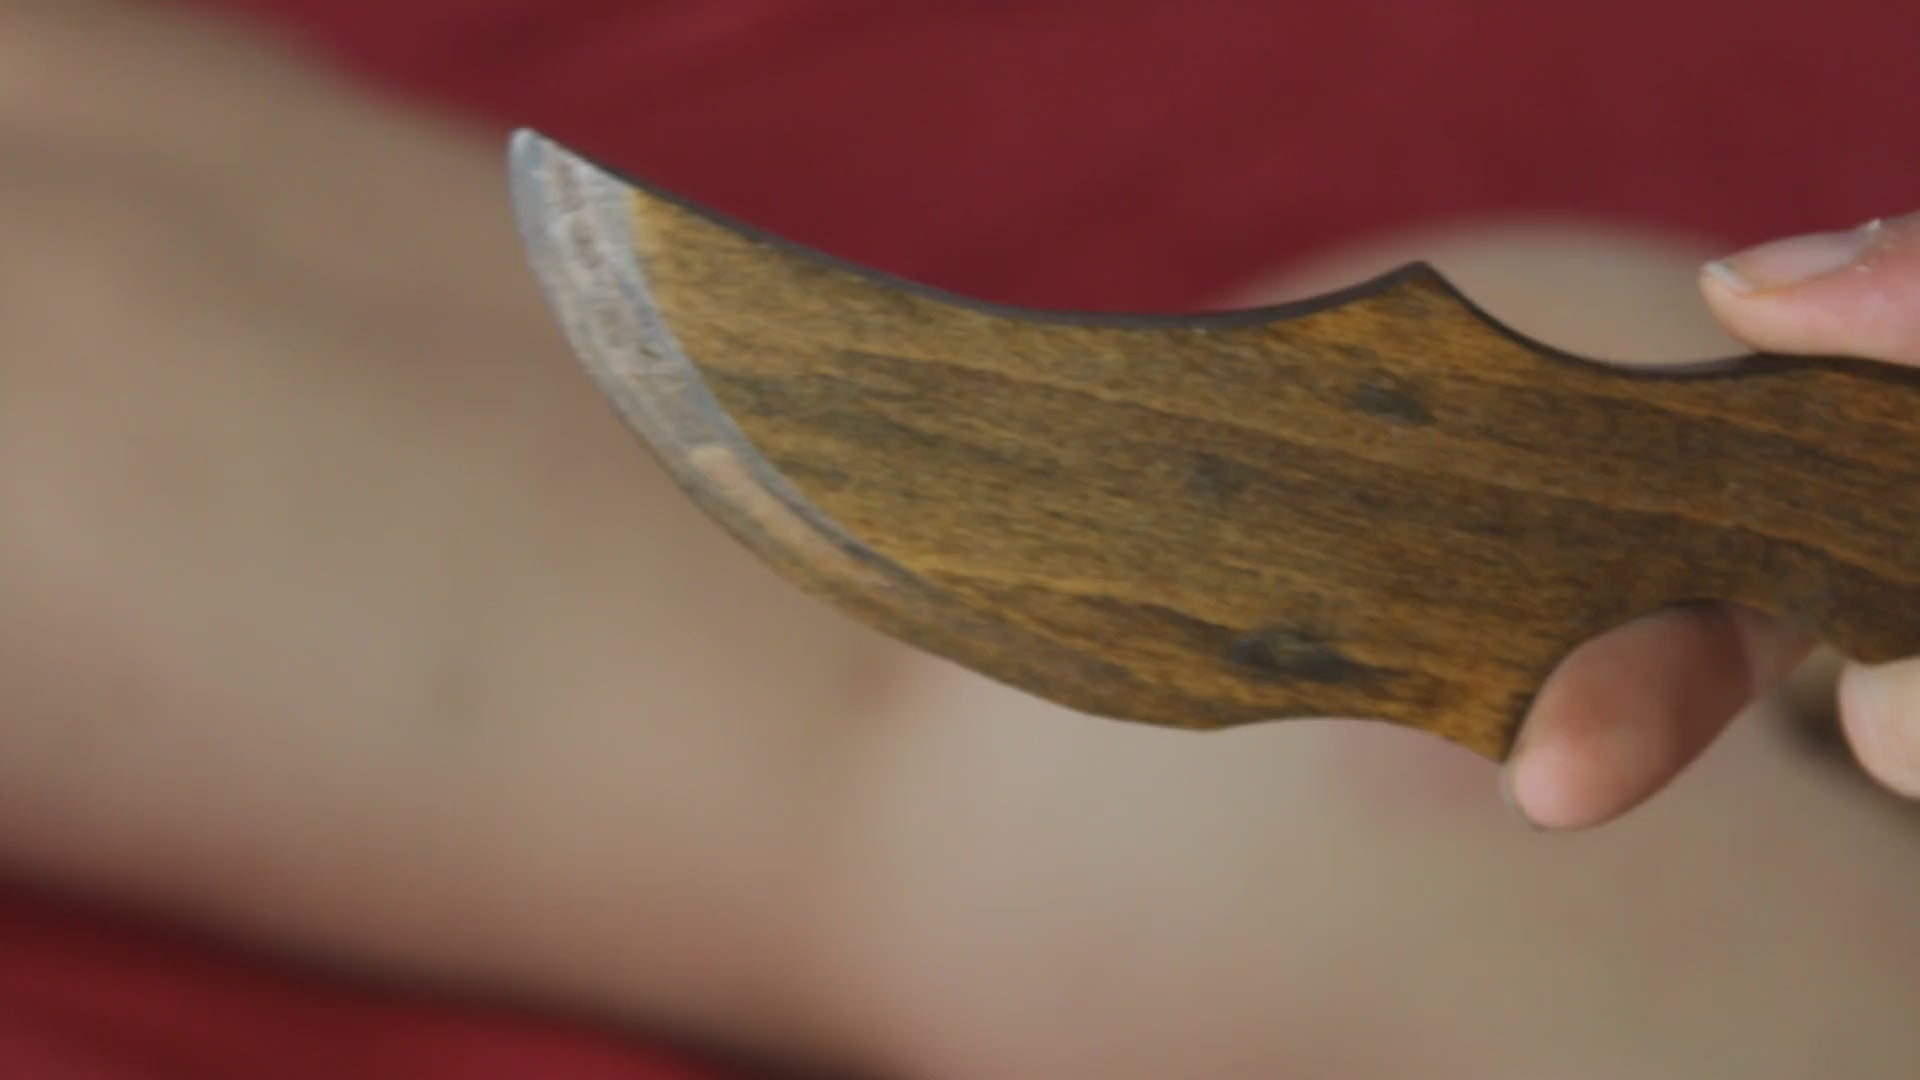 démonstration du couteau bdsm stylisé en bois, avec griffures dans le dos